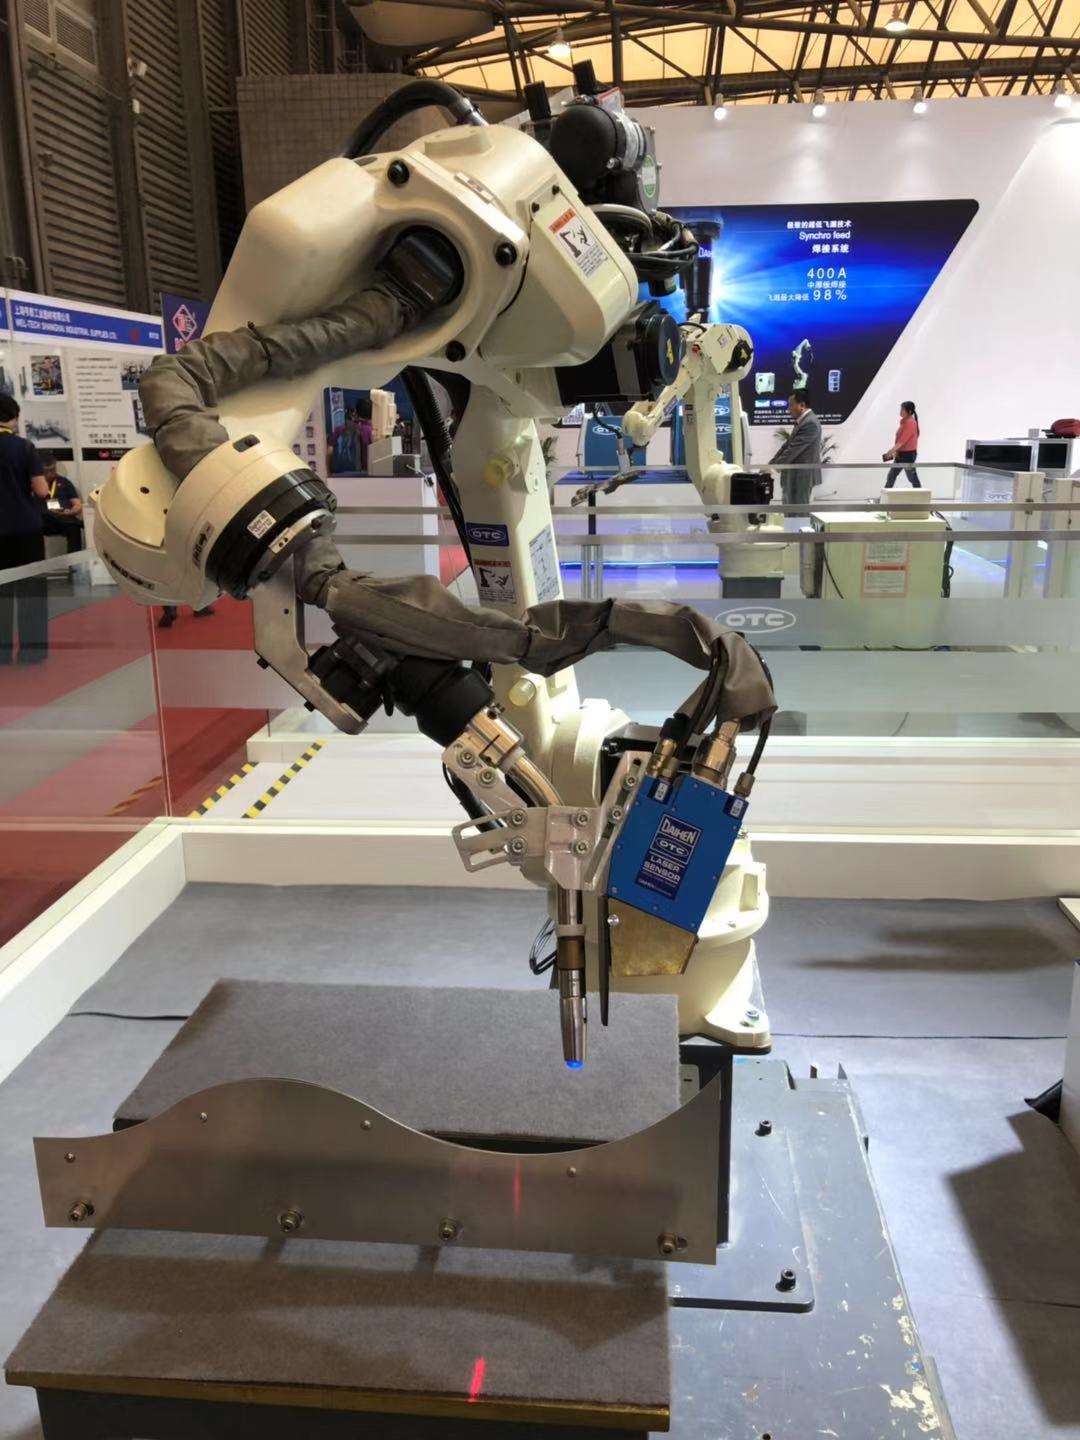 OTC焊接机器人